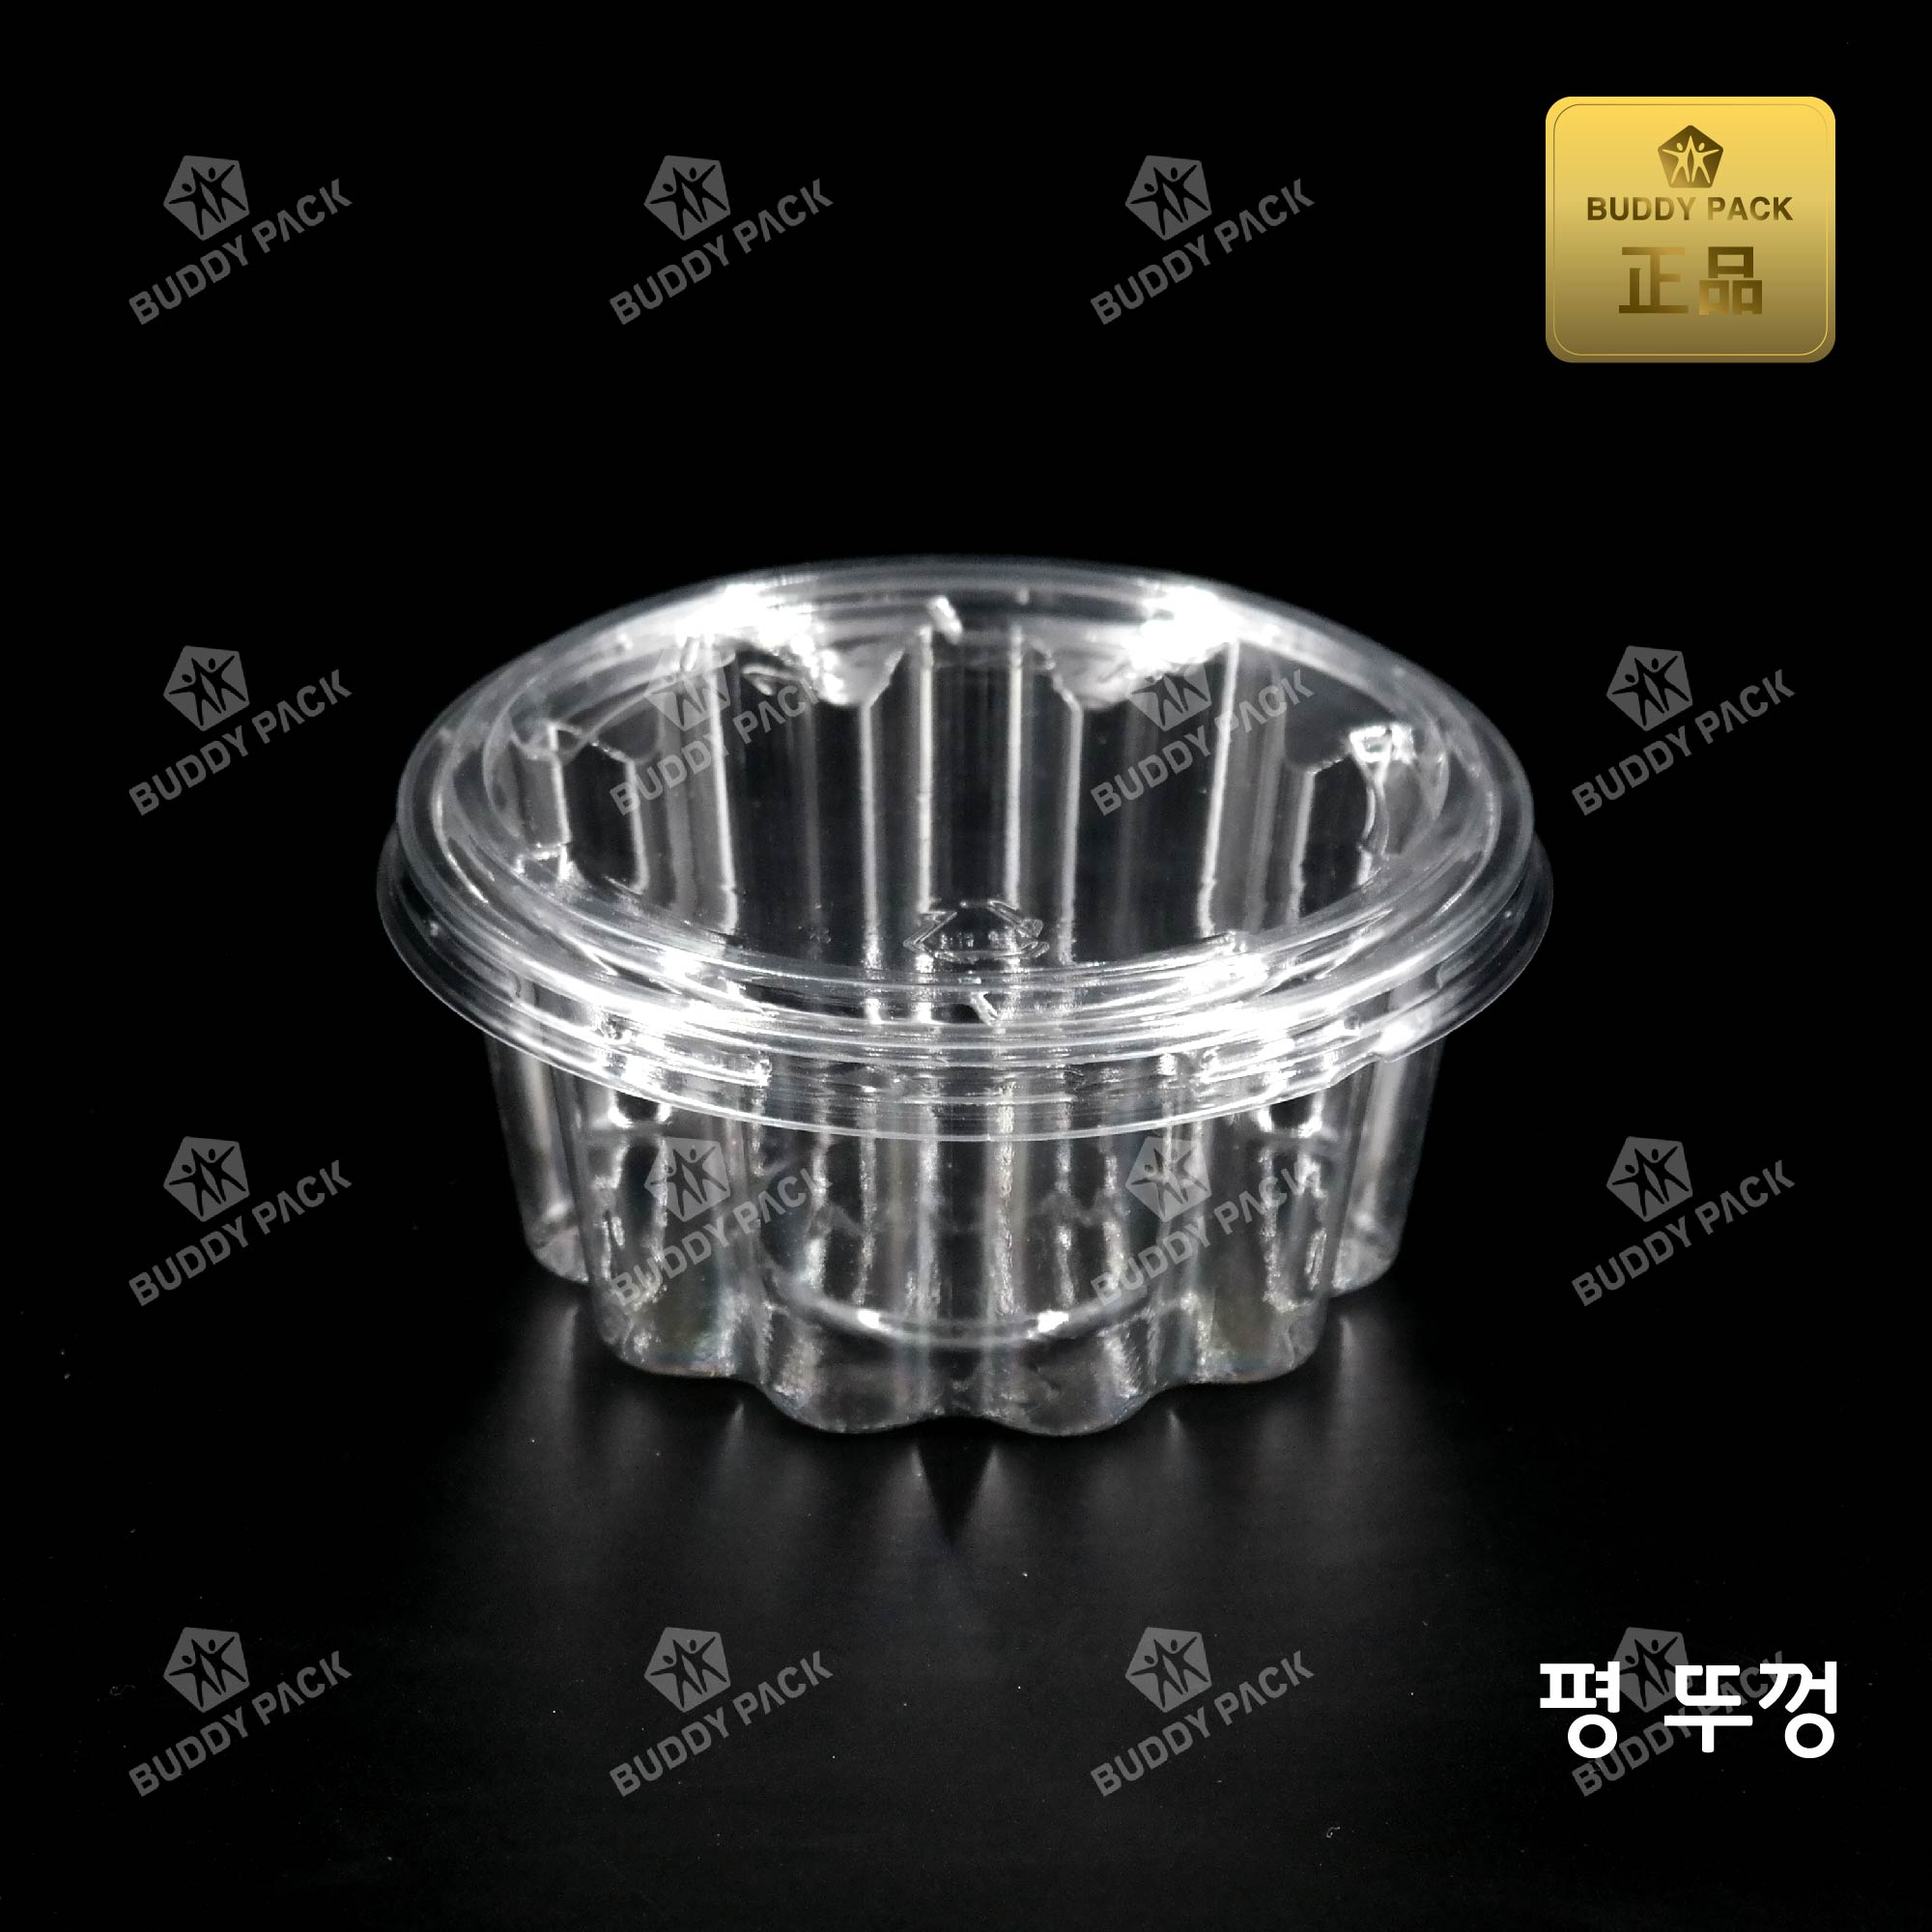 버디팩 샐러드 빙수용기 M-125A 투명1000개(평뚜껑)